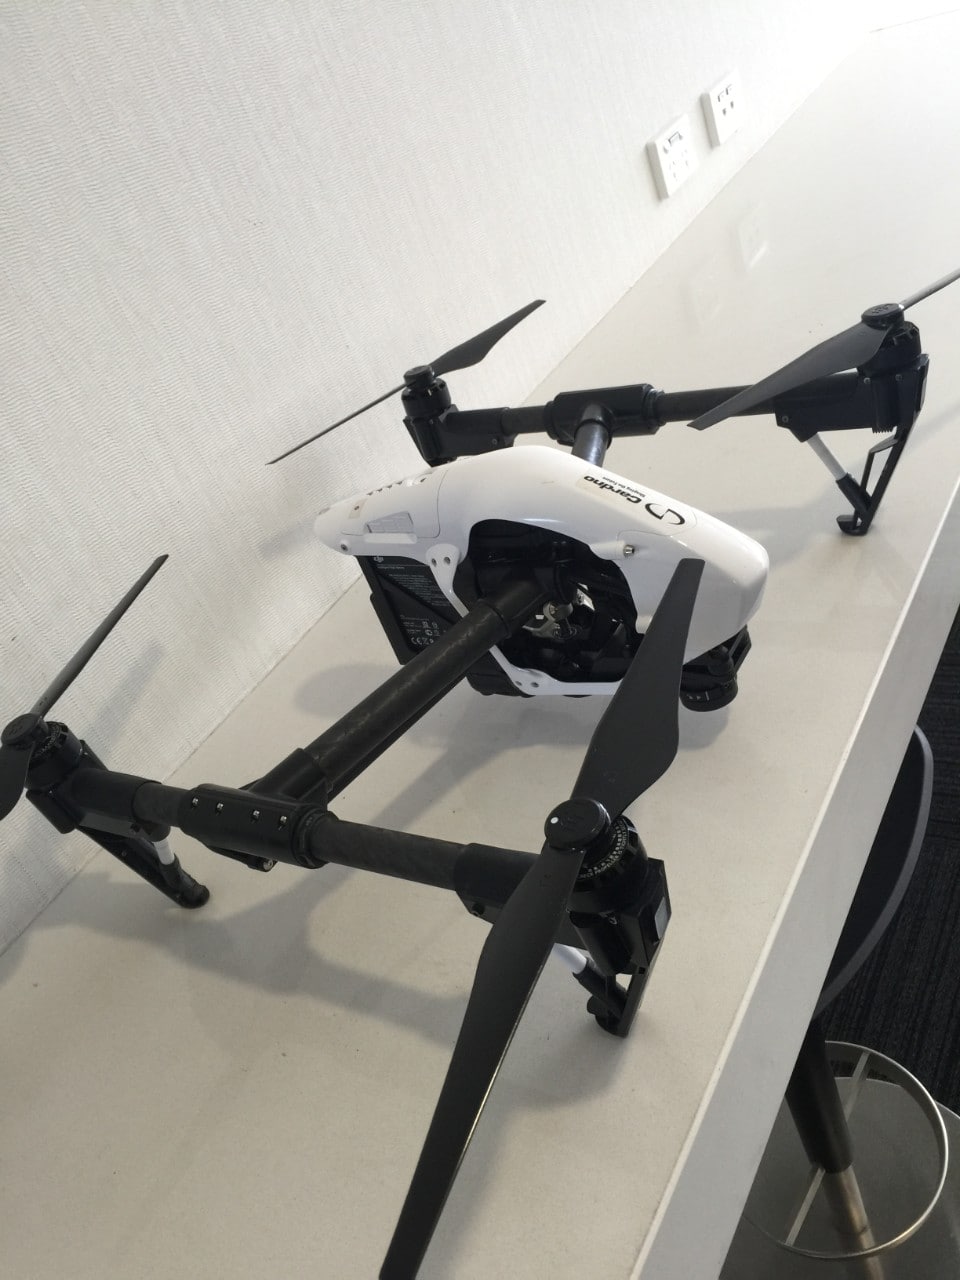 A Cardno drone.